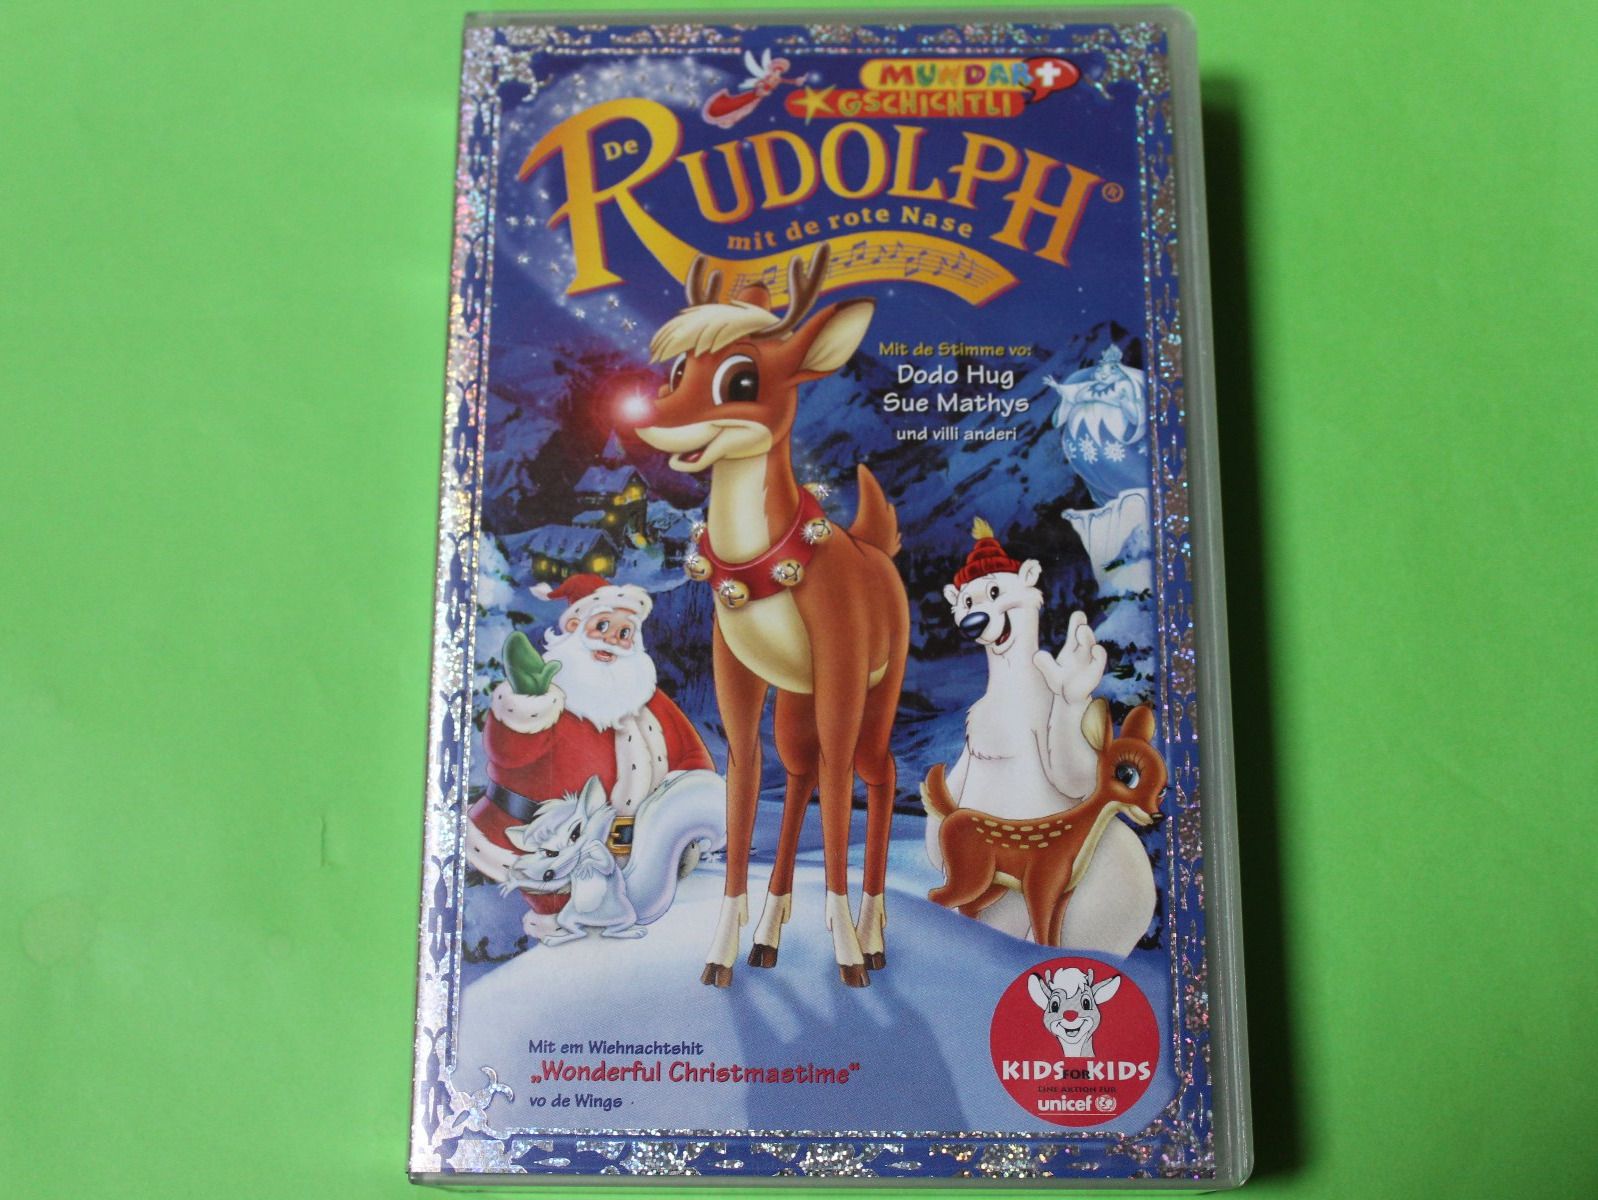 De Rudolph mit de rote Nase, The Dubbing Database